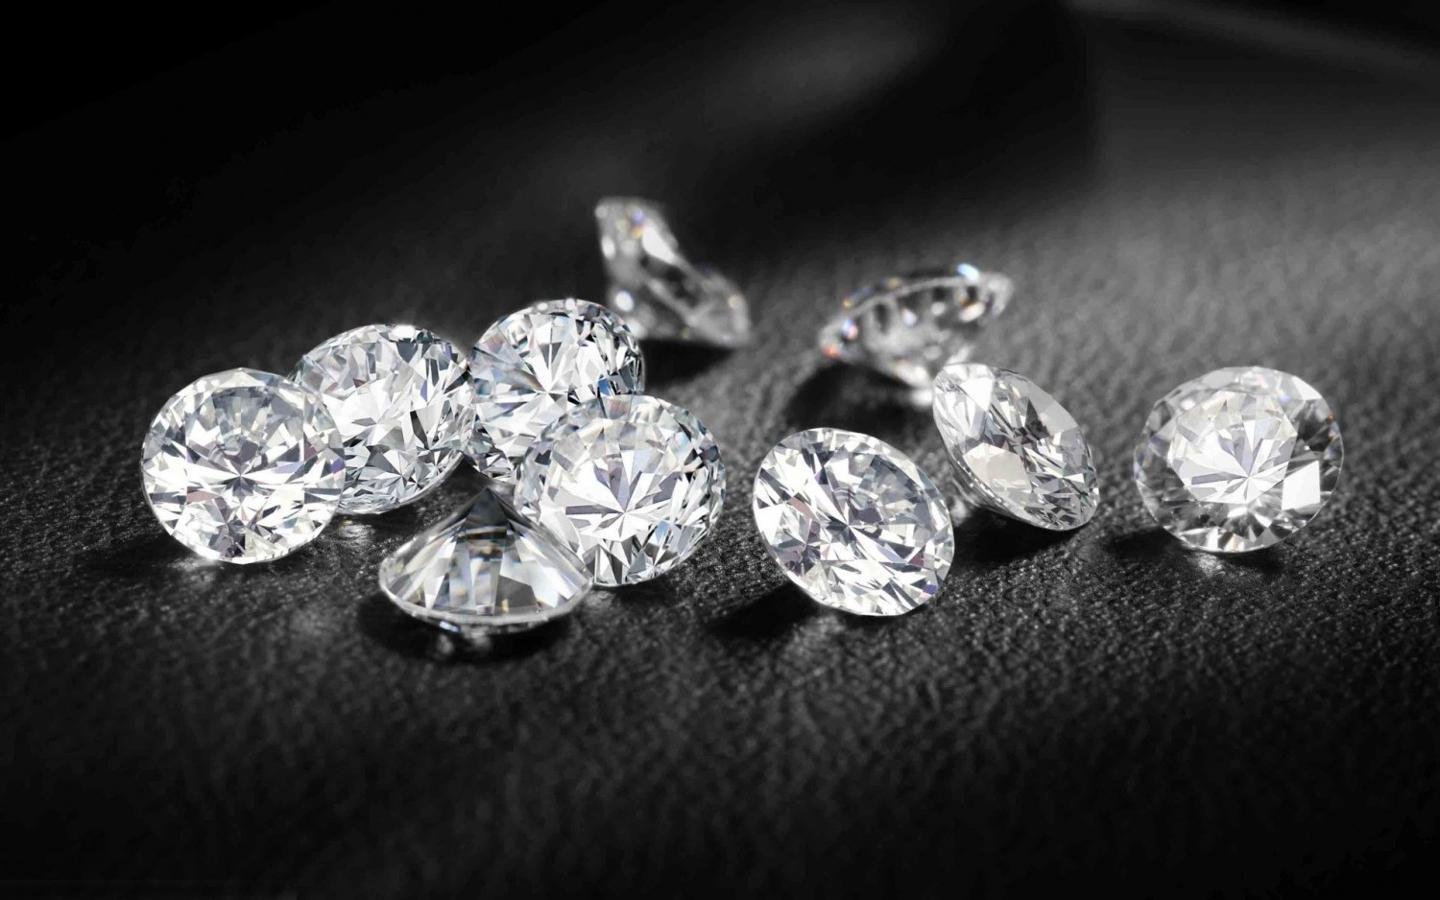 Diamanten kaufen, auch eine schlaue Investition